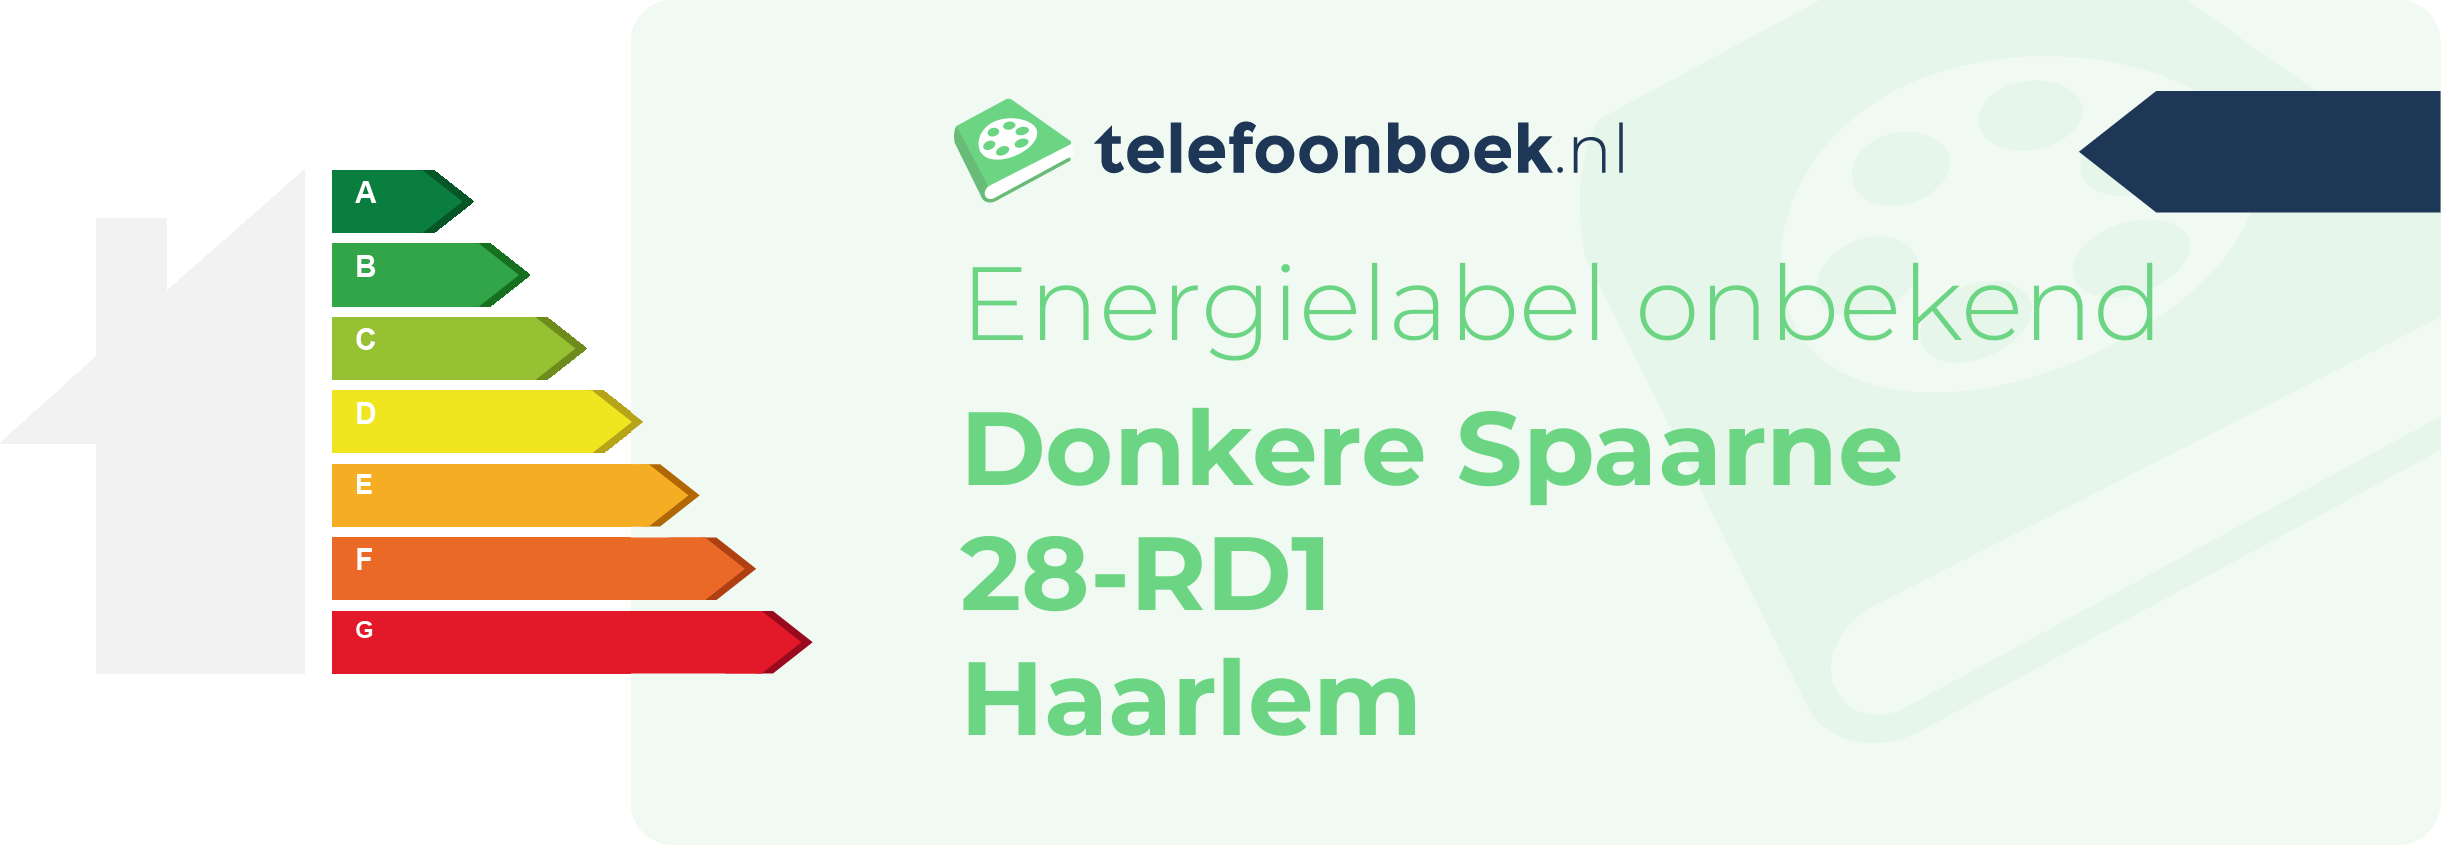 Energielabel Donkere Spaarne 28-RD1 Haarlem